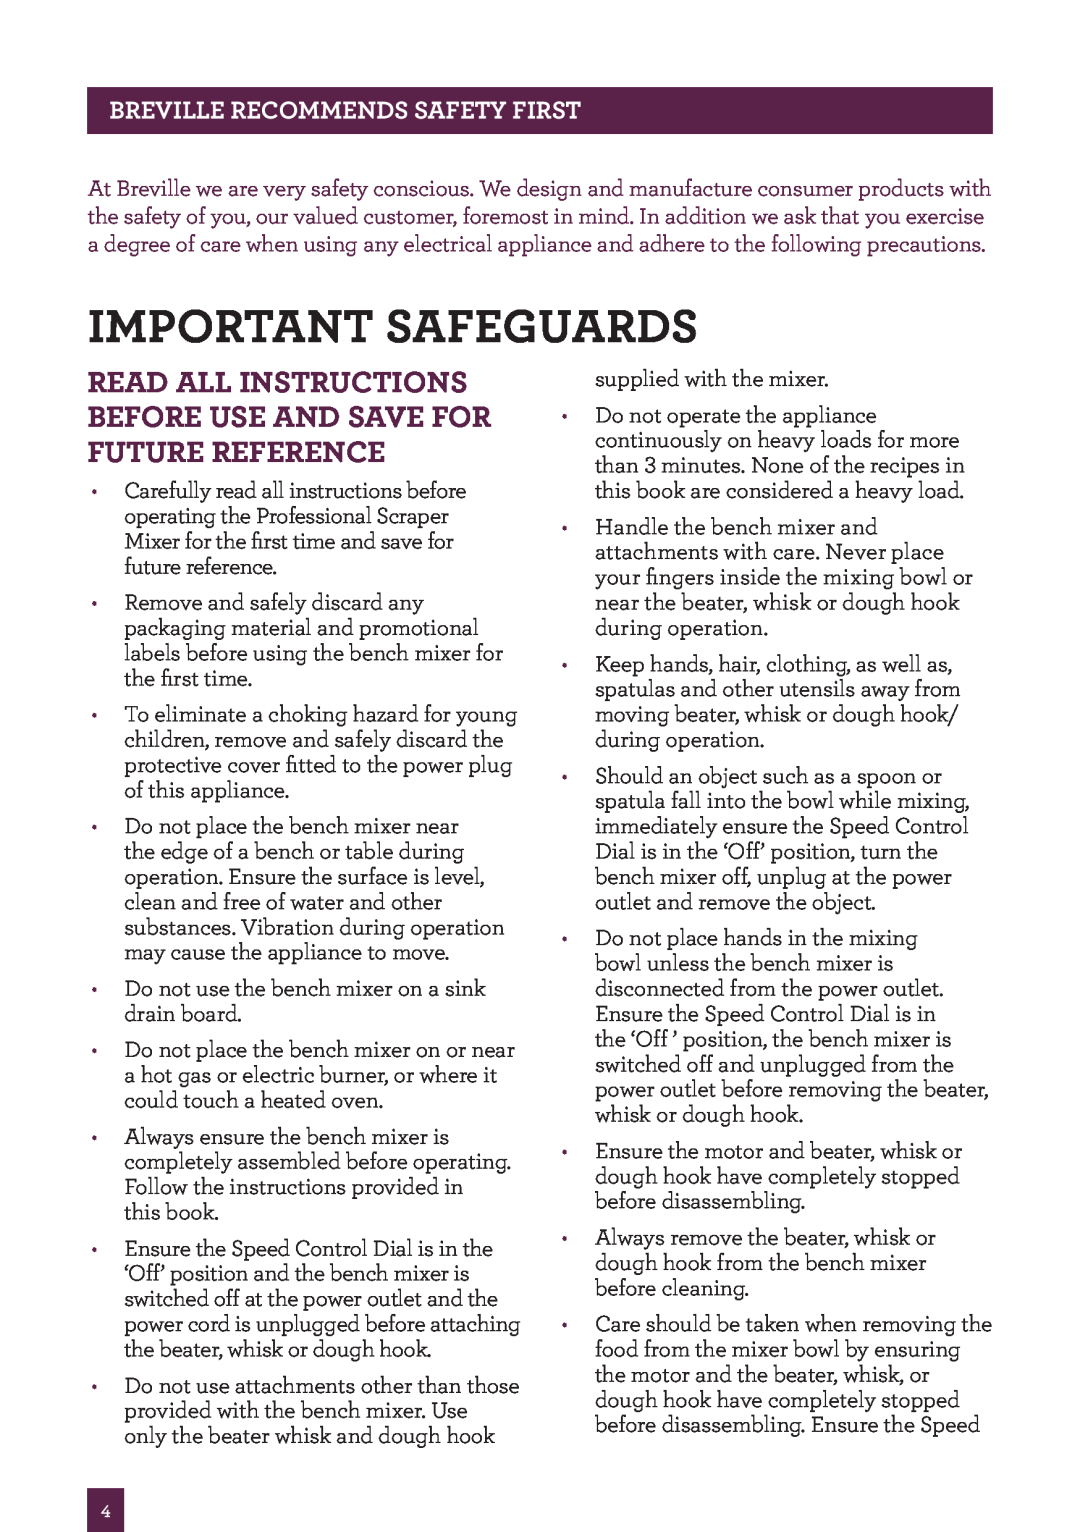 Breville BEM800 brochure Important safeguards, Breville recommends safety first 